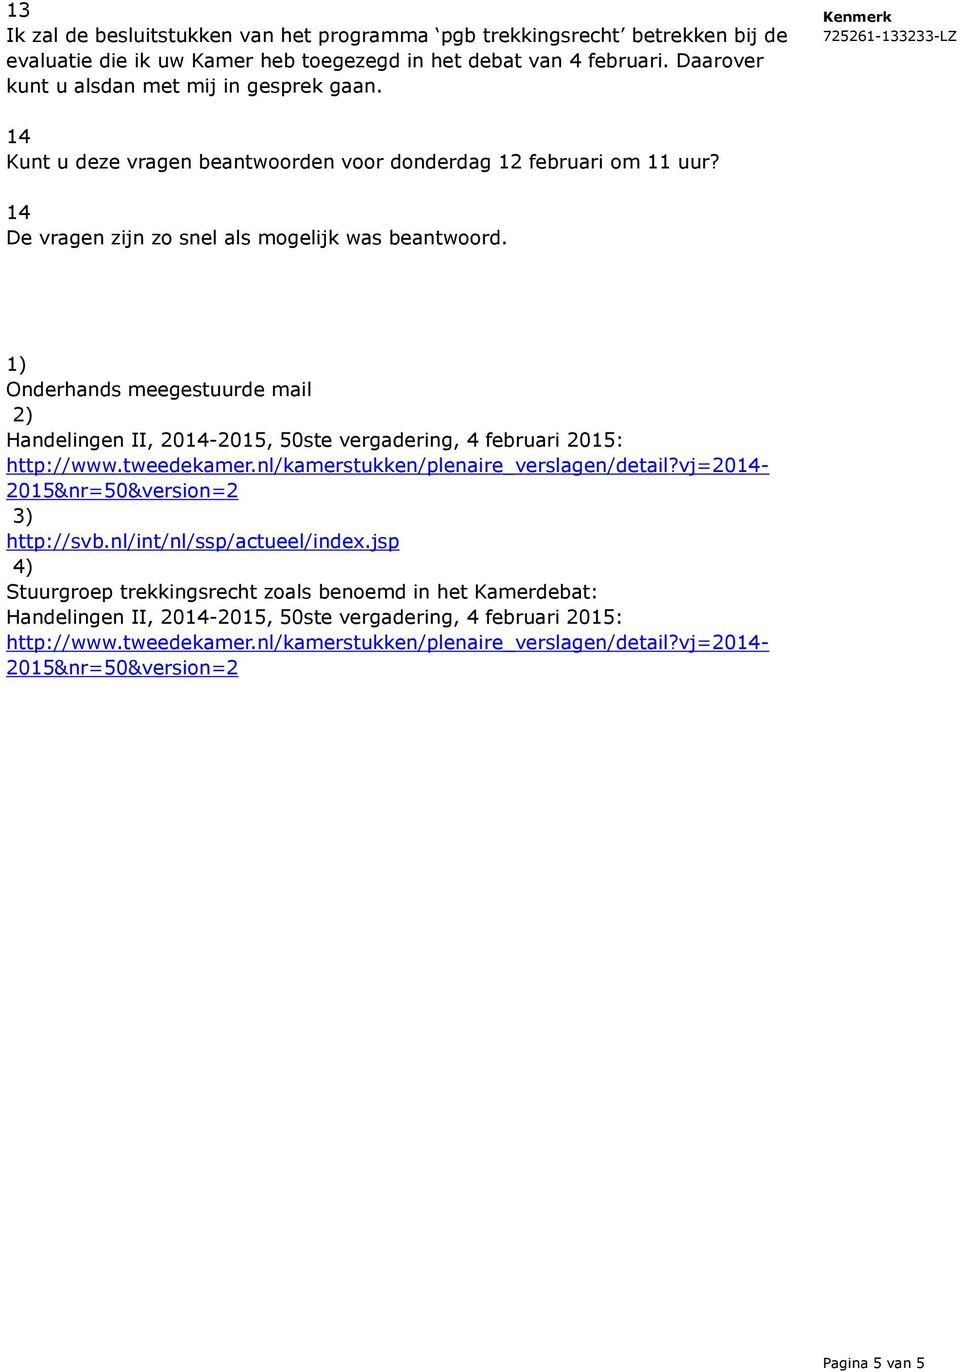 1) Onderhands meegestuurde mail 2) Handelingen II, 2014-2015, 50ste vergadering, 4 februari 2015: http://www.tweedekamer.nl/kamerstukken/plenaire_verslagen/detail?